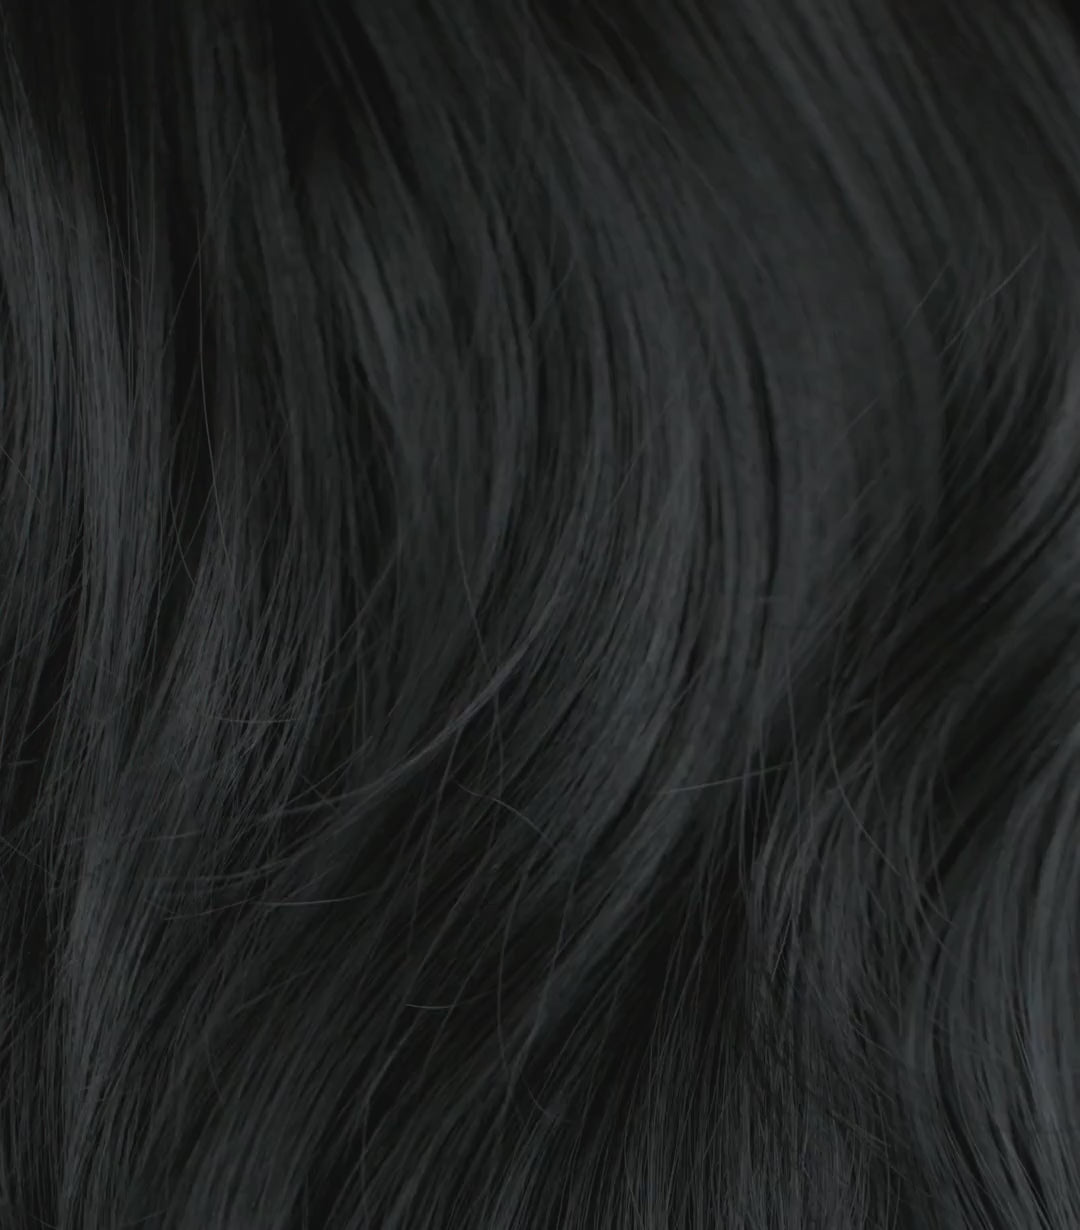 Deze Zwarte (Jet Black #1) clip in hairextensions zijn gemaakt van 100% remy gesorteerd human hair. Deze kleur zwart heeft een koele ondertoon en een prachtige glans. Dare to go dark and dramatic? Dit zijn de donkerste kleur extensions van onze collectie. Met deze clip in extensions transformeer je in een oogwenk je haar tot een volumineus, lange bos haar. 